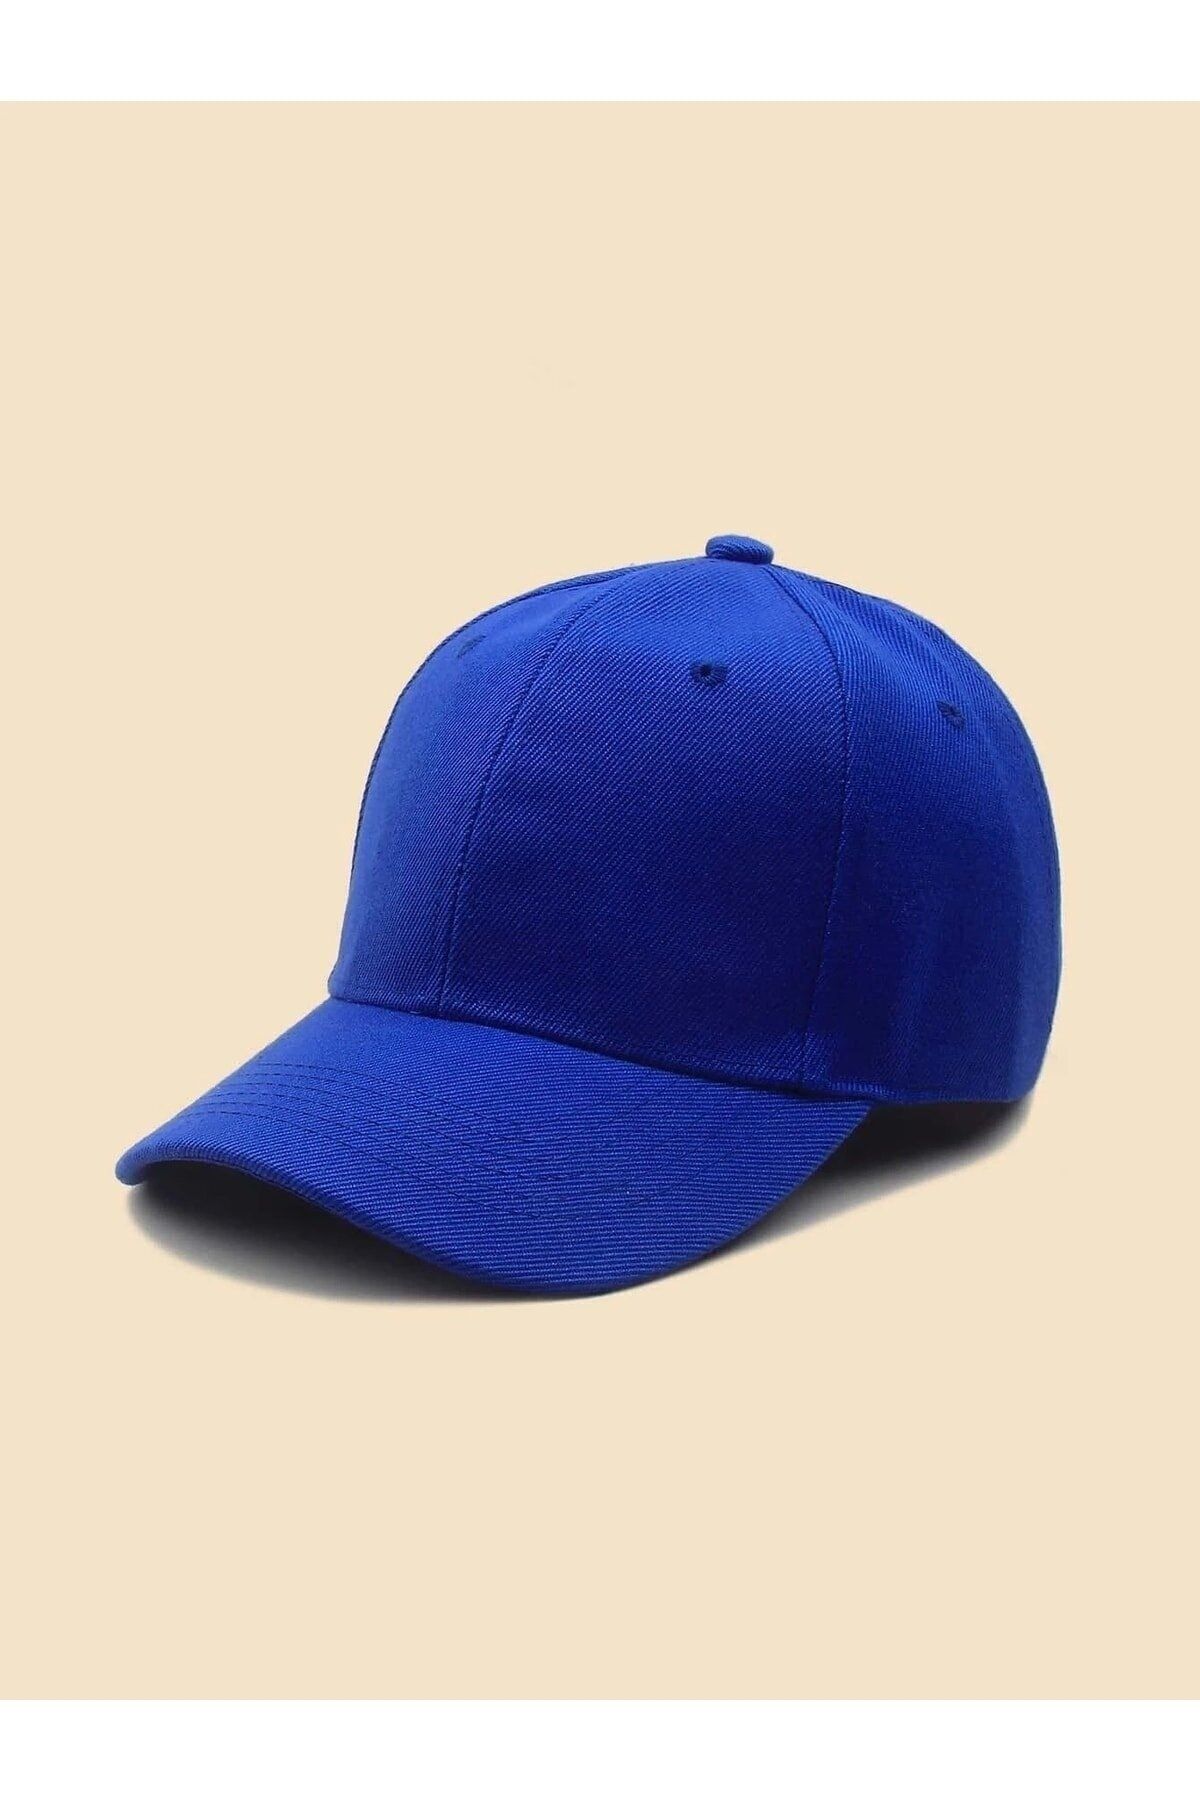 Nacar Unısex Tek Renk Düz Basic Şapka Cap Tek Ebat